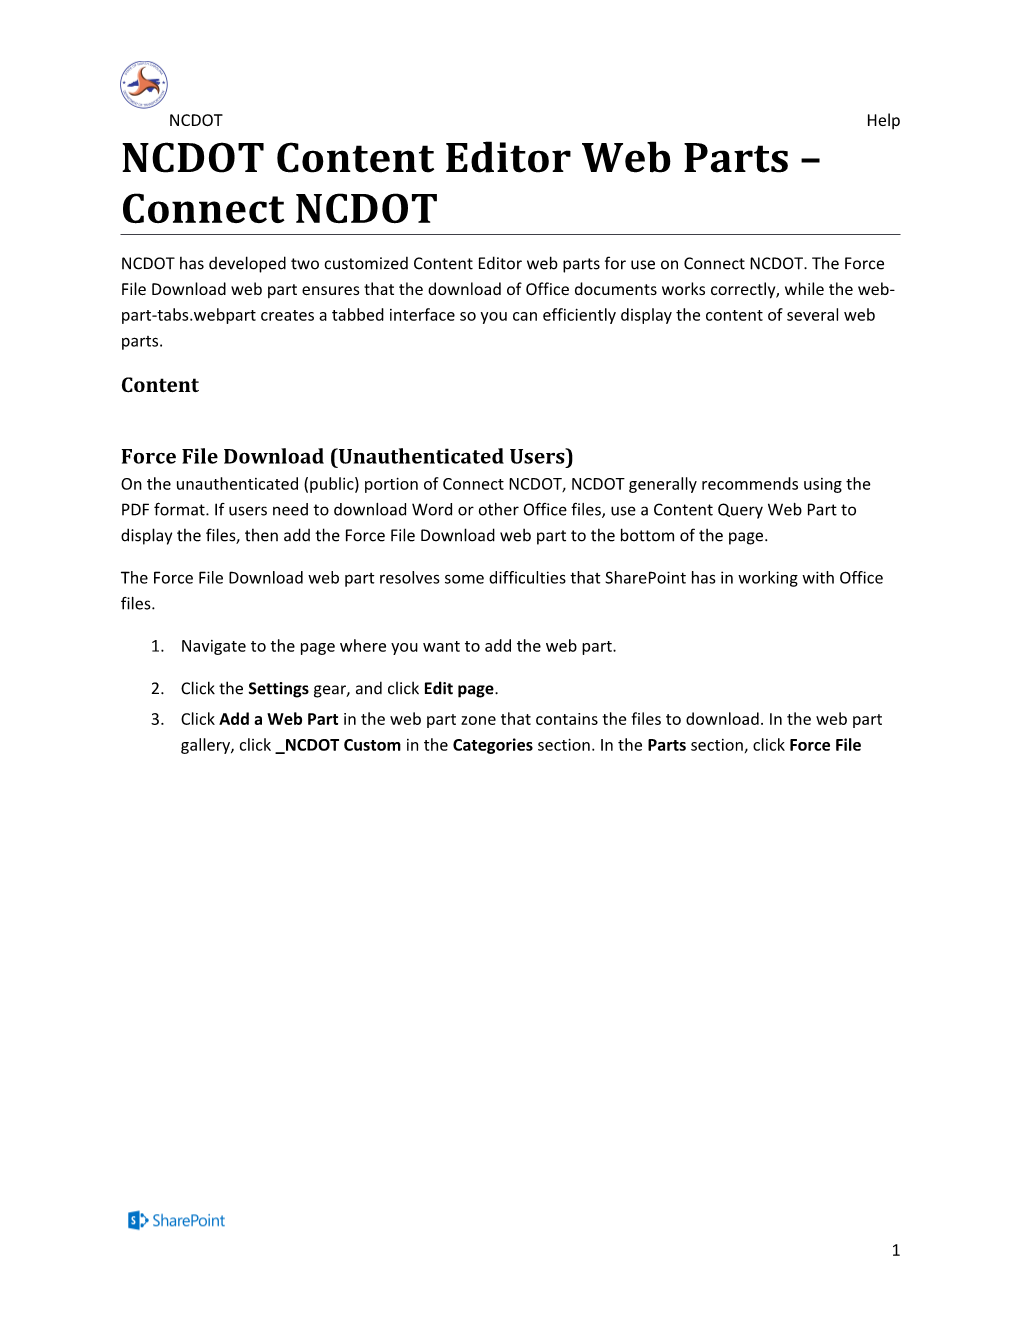 NCDOT Content Editor Web Parts - Connect NCDOT (D)